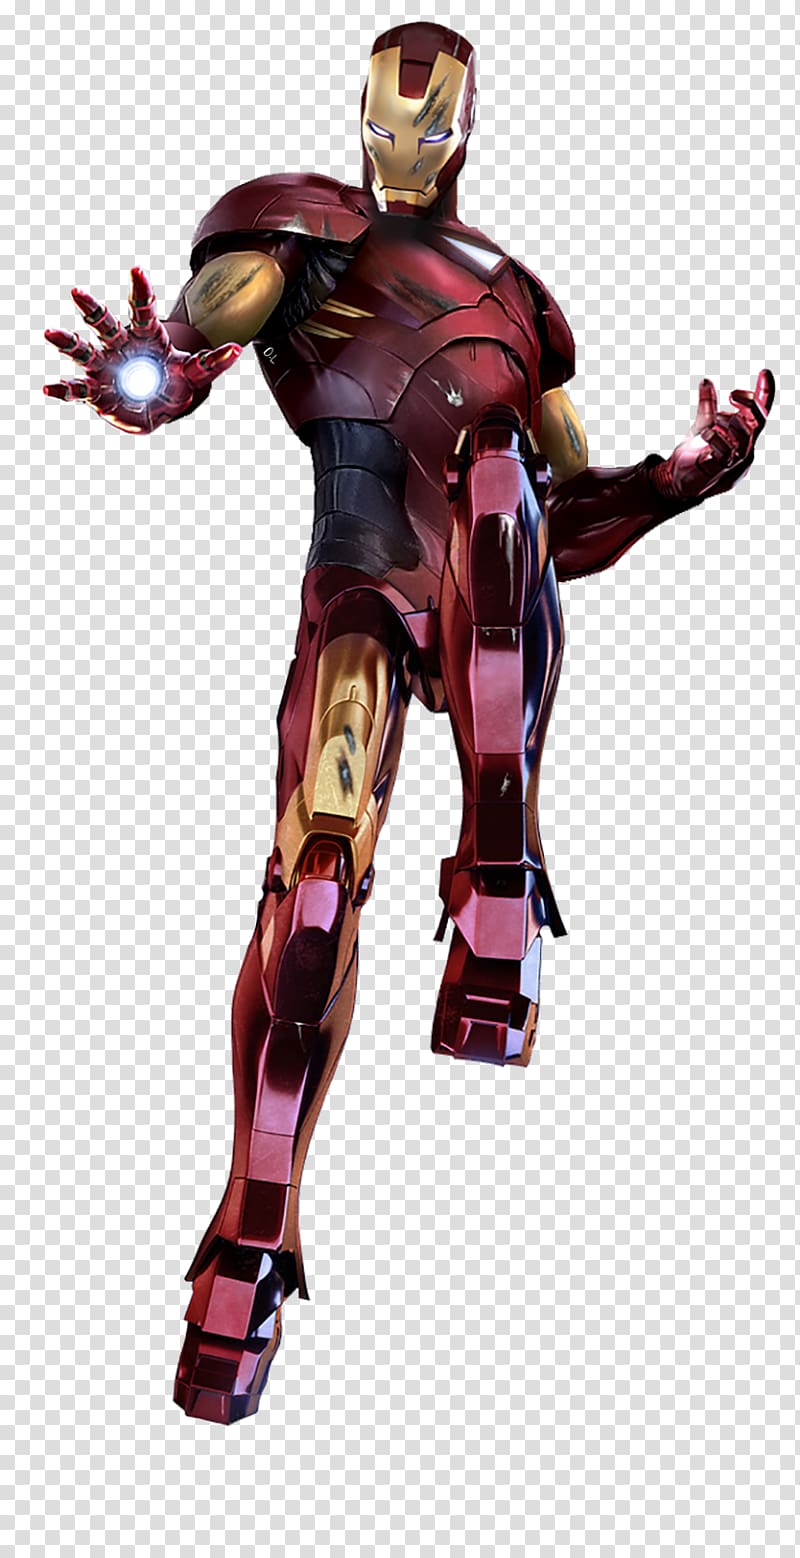 Marvel's Iron Man, Iron Man Extremis Mandarin Comics, ironman transparent background PNG clipart